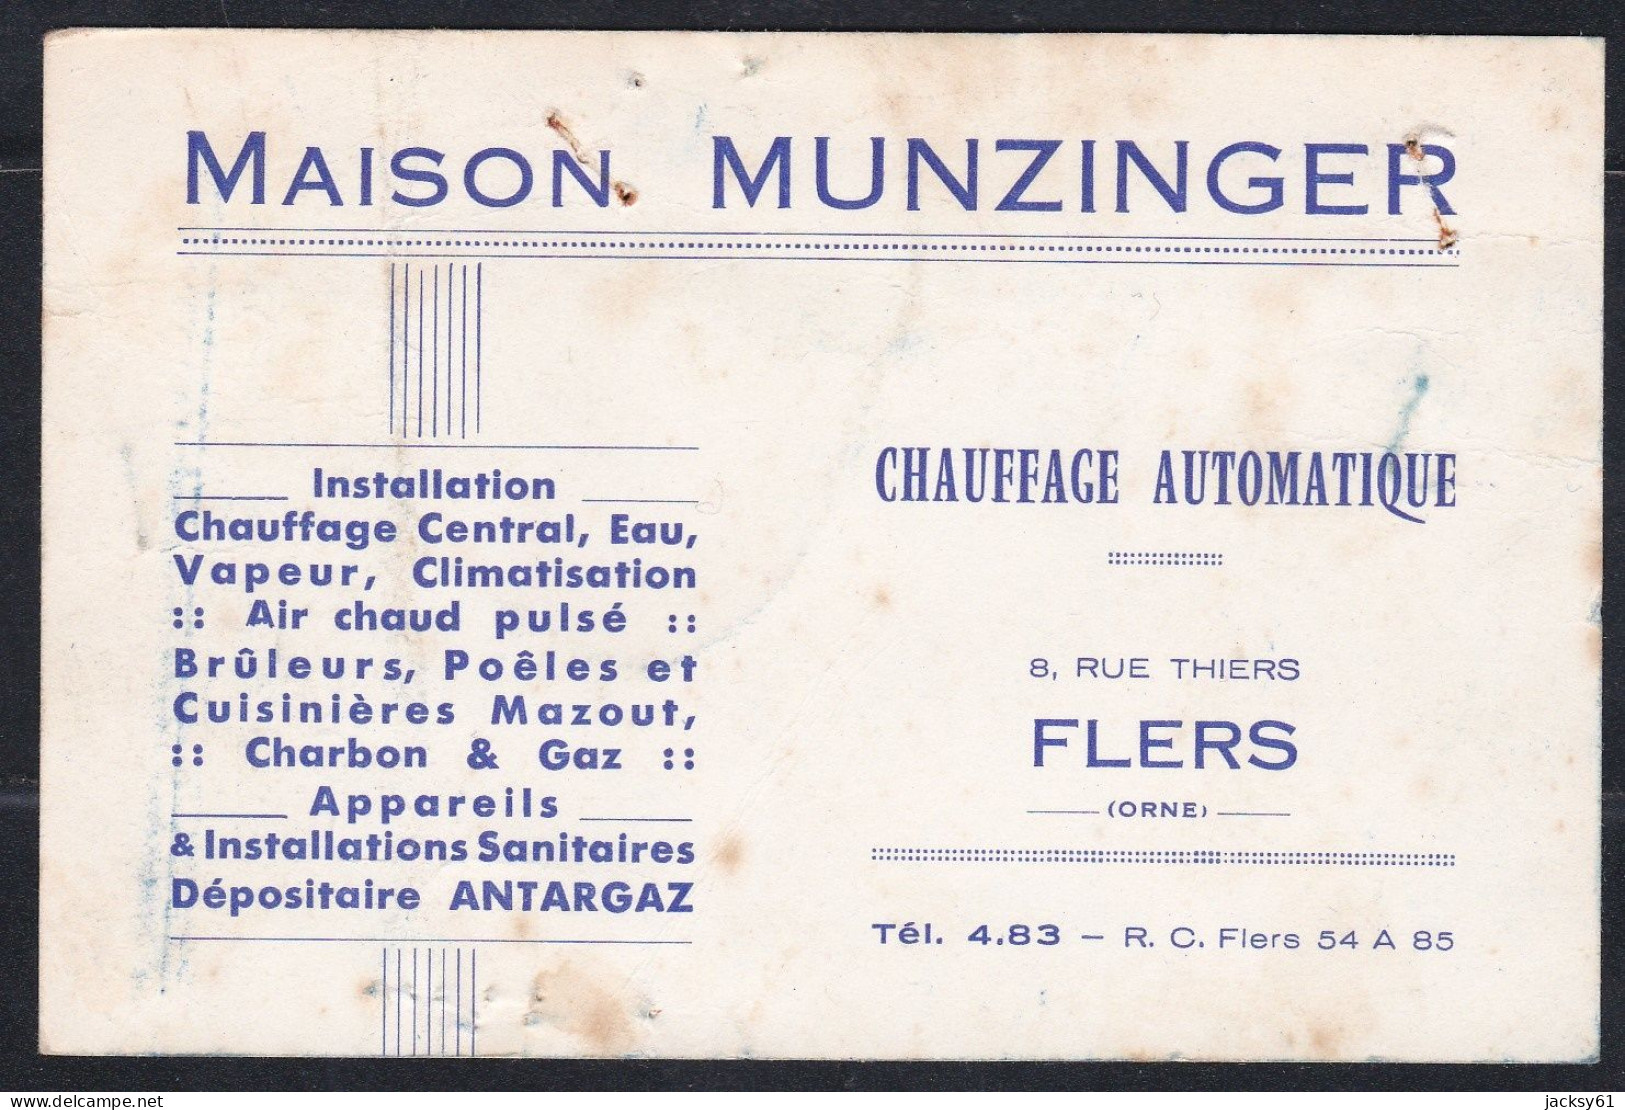 61 - Flers - Maison Munzinger - Chauffage Automatique - Tarjetas De Visita